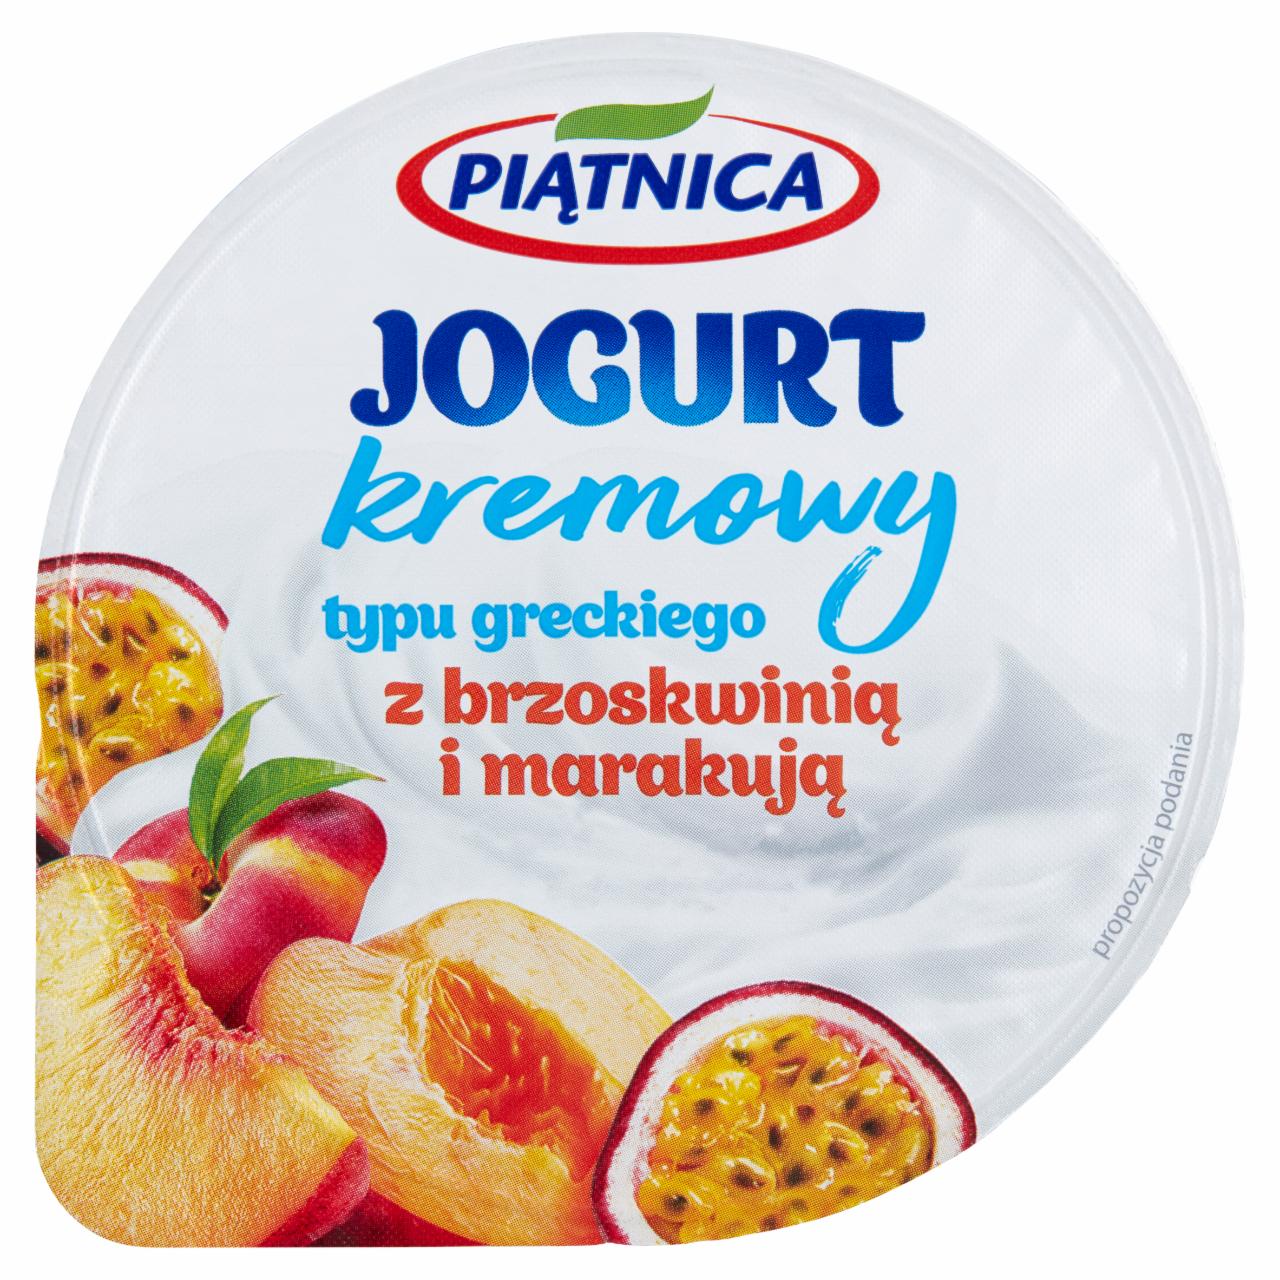 Zdjęcia - Piątnica Jogurt kremowy typu greckiego z brzoskwinią i marakują 150 g